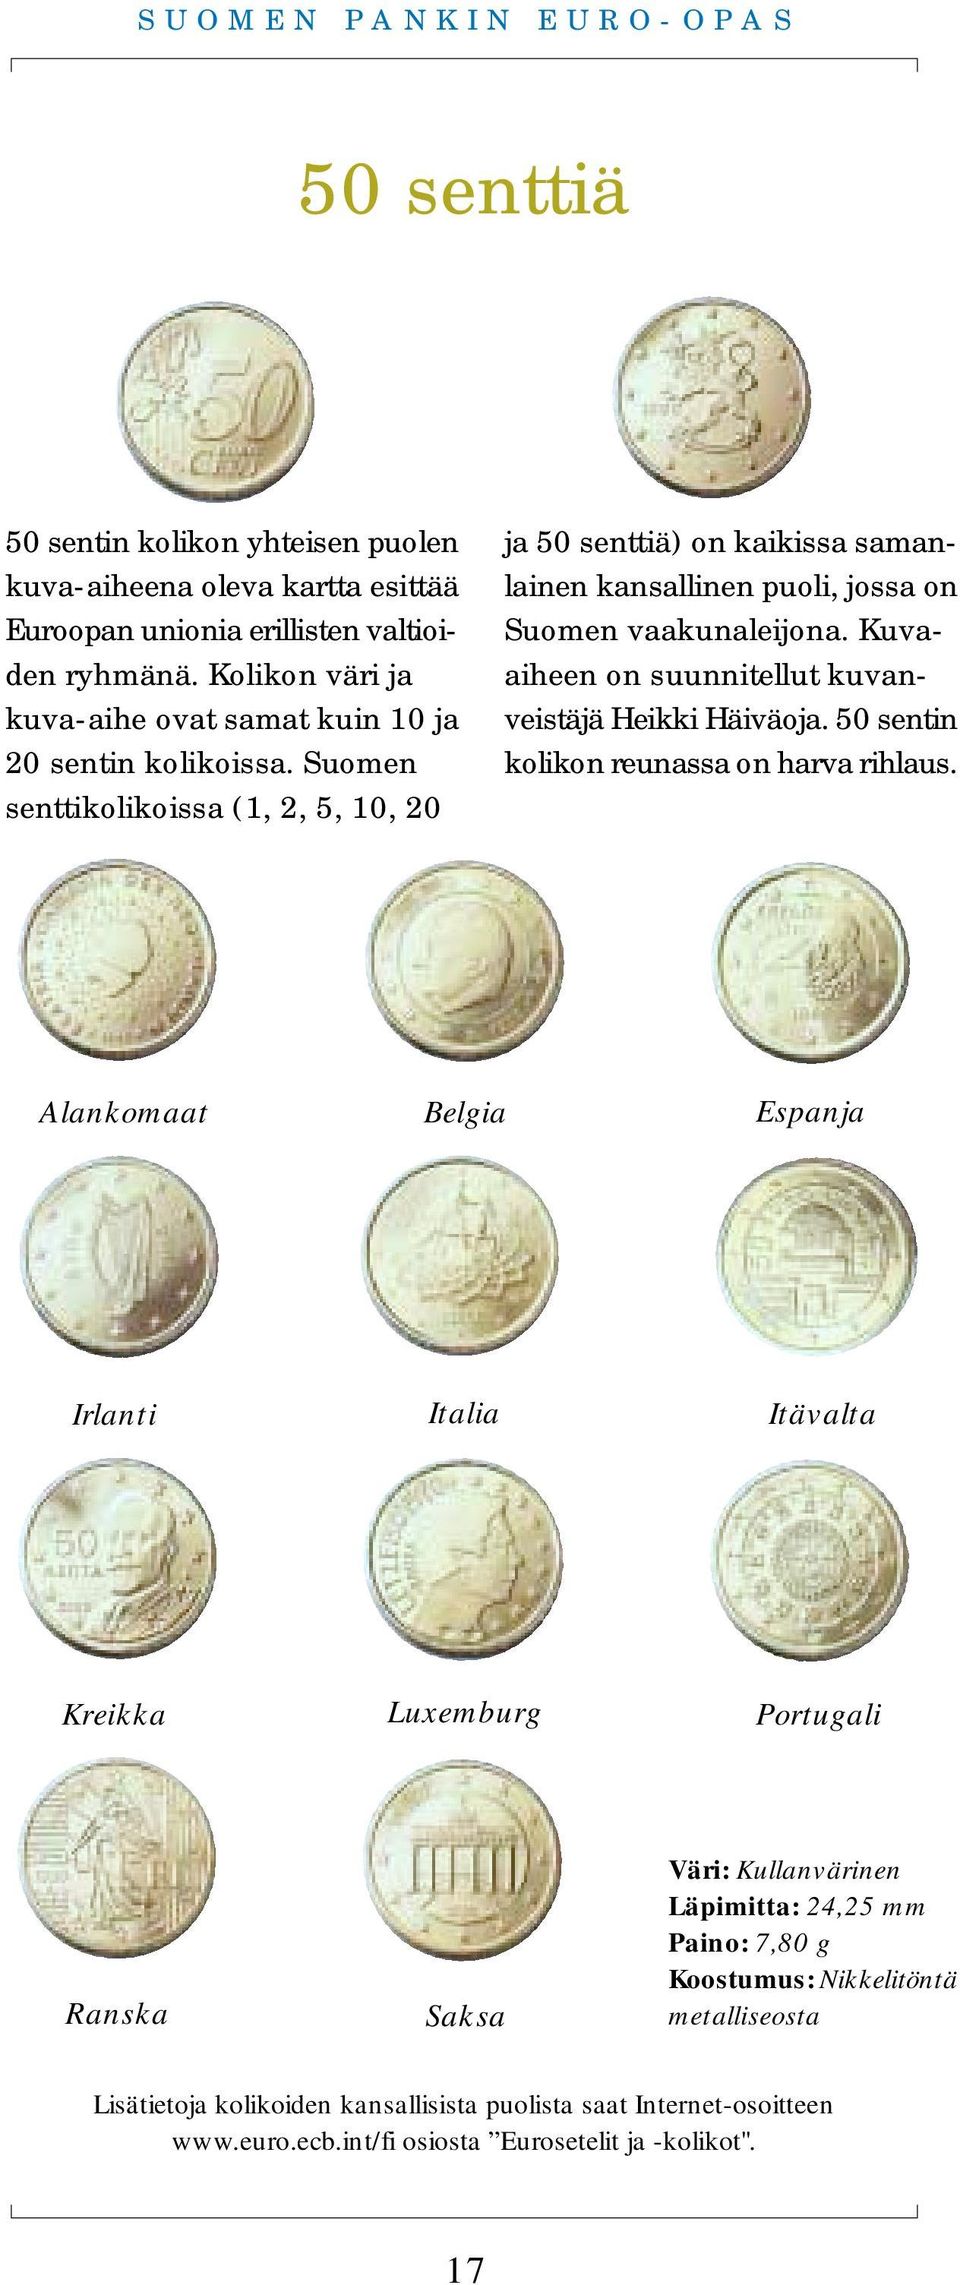 Suomen senttikolikoissa (1, 2, 5, 10, 20 ja 50 senttiä) on kaikissa samanlainen kansallinen puoli, jossa on Suomen vaakunaleijona.